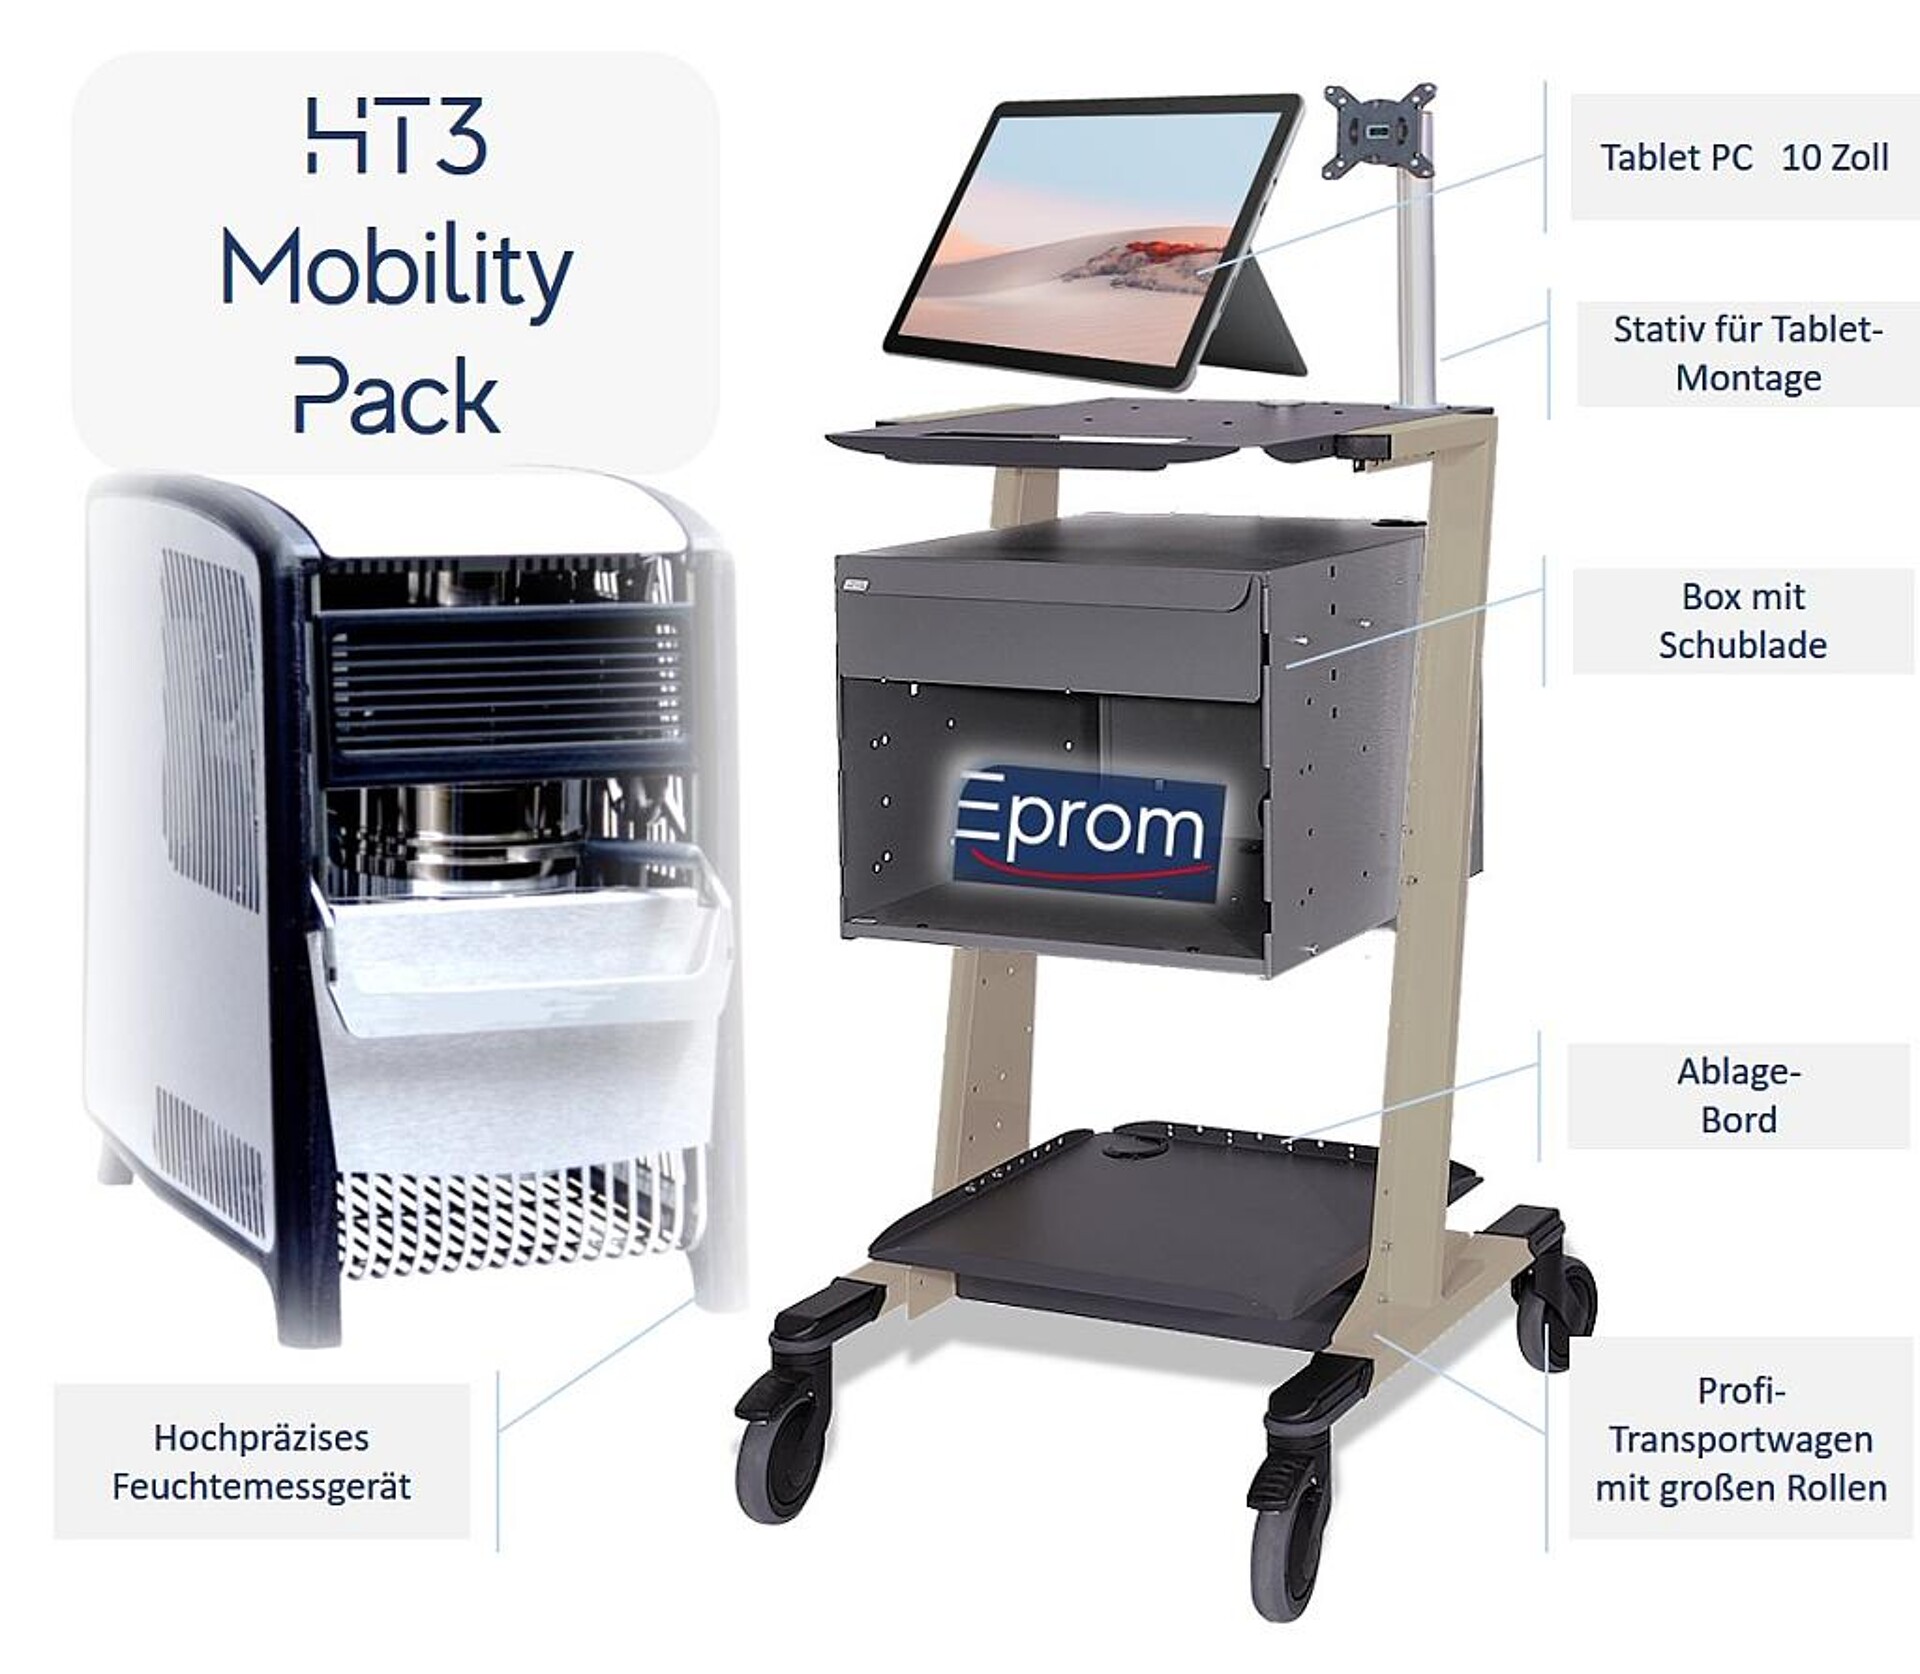 Das Mobility Pack umfasst neben dem Feuchtemessgerät HT3 sämtliches Zubehör zum mobilen Einsatz in der Produktion. (Abb.: Eprom)